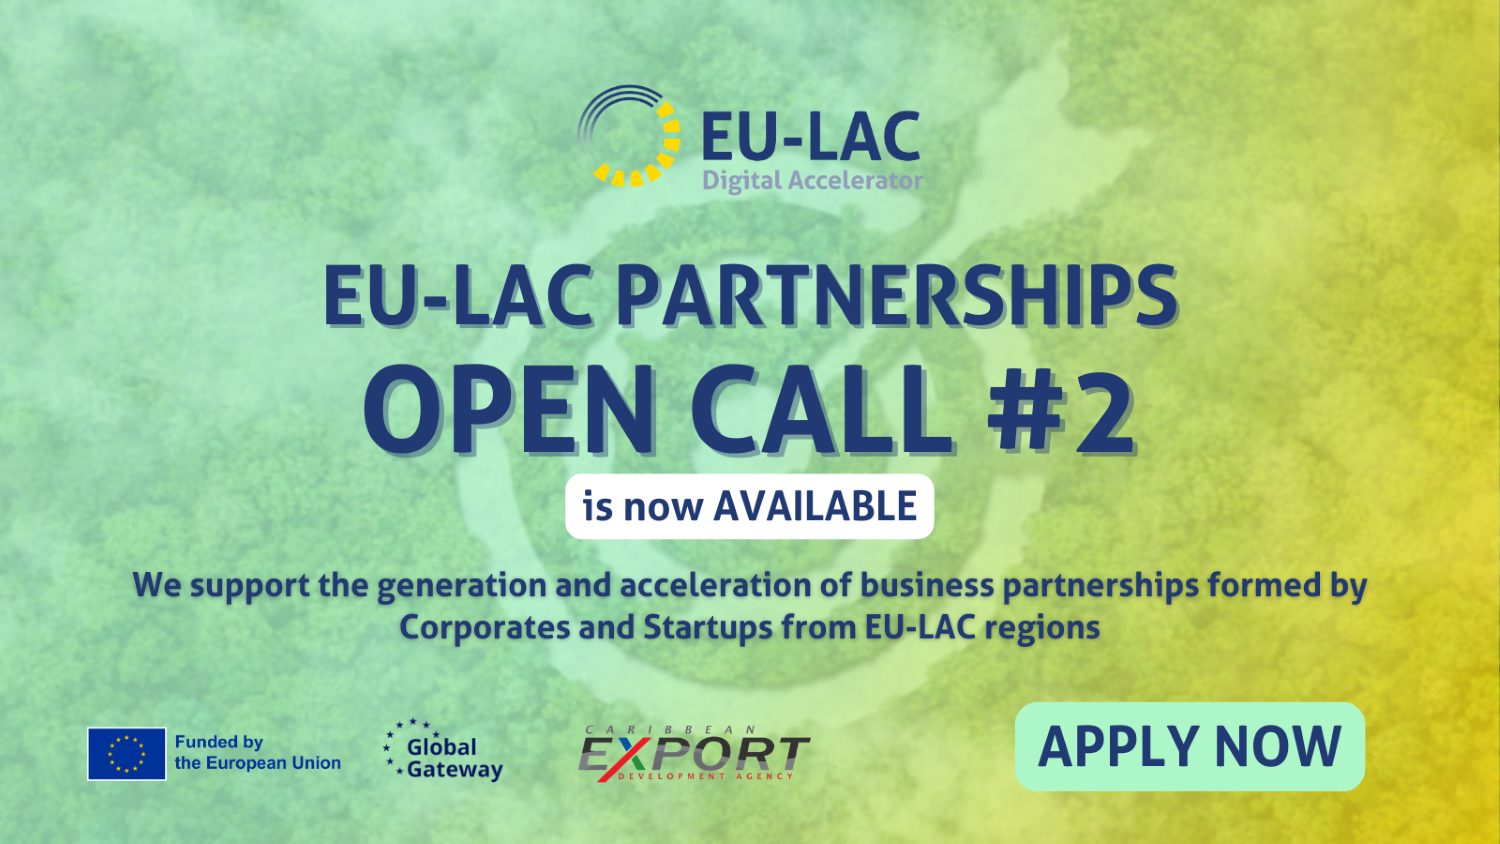 L’accélérateur numérique UE-ALC lance le deuxième appel à candidatures pour des partenariats commerciaux numériques entre l’Europe, l’Amérique latine et les Caraïbes